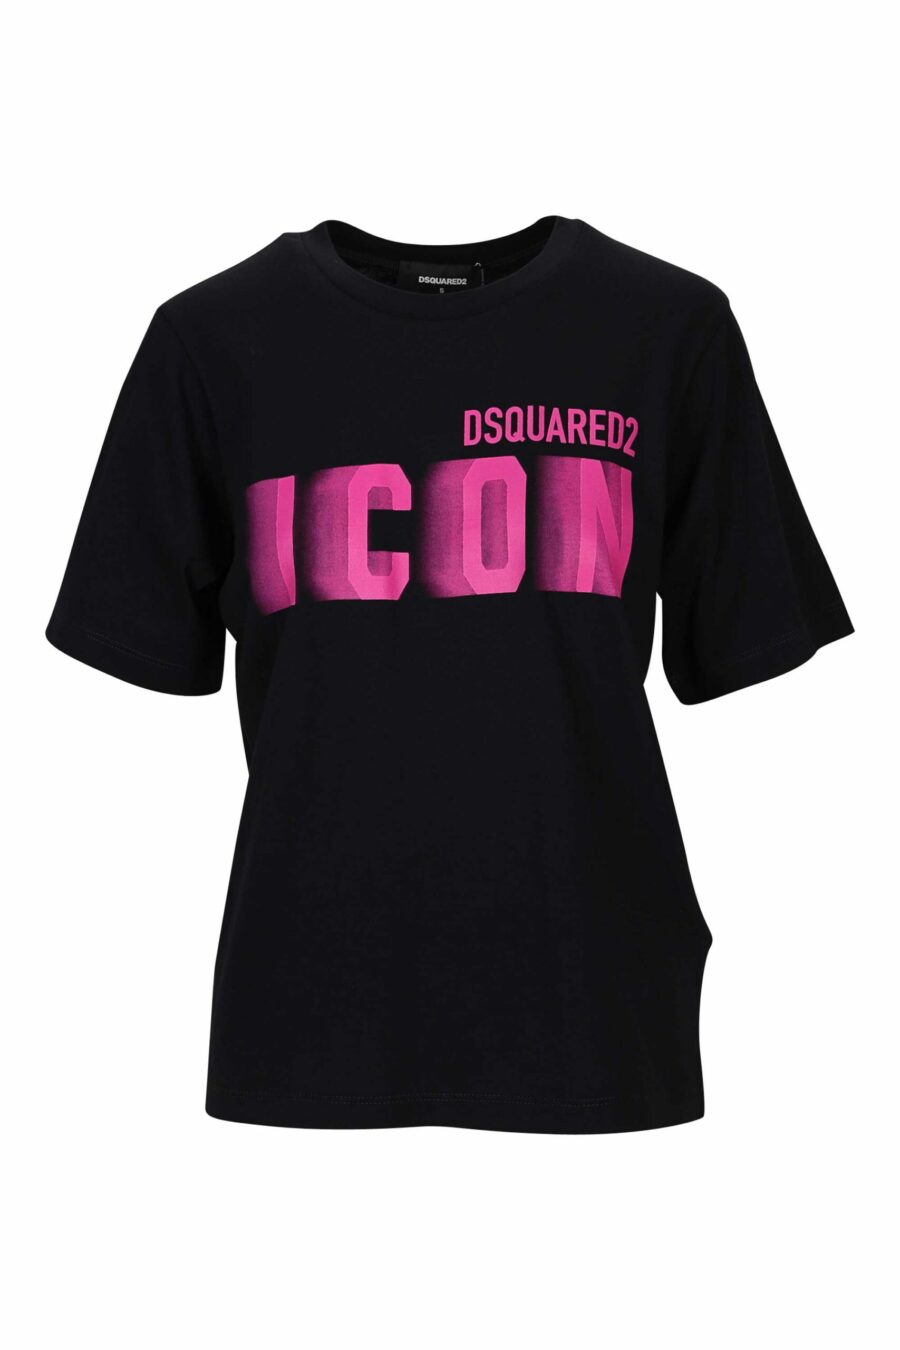 T-shirt preta com logótipo neon fúcsia esbatido - 8054148406530 scaled